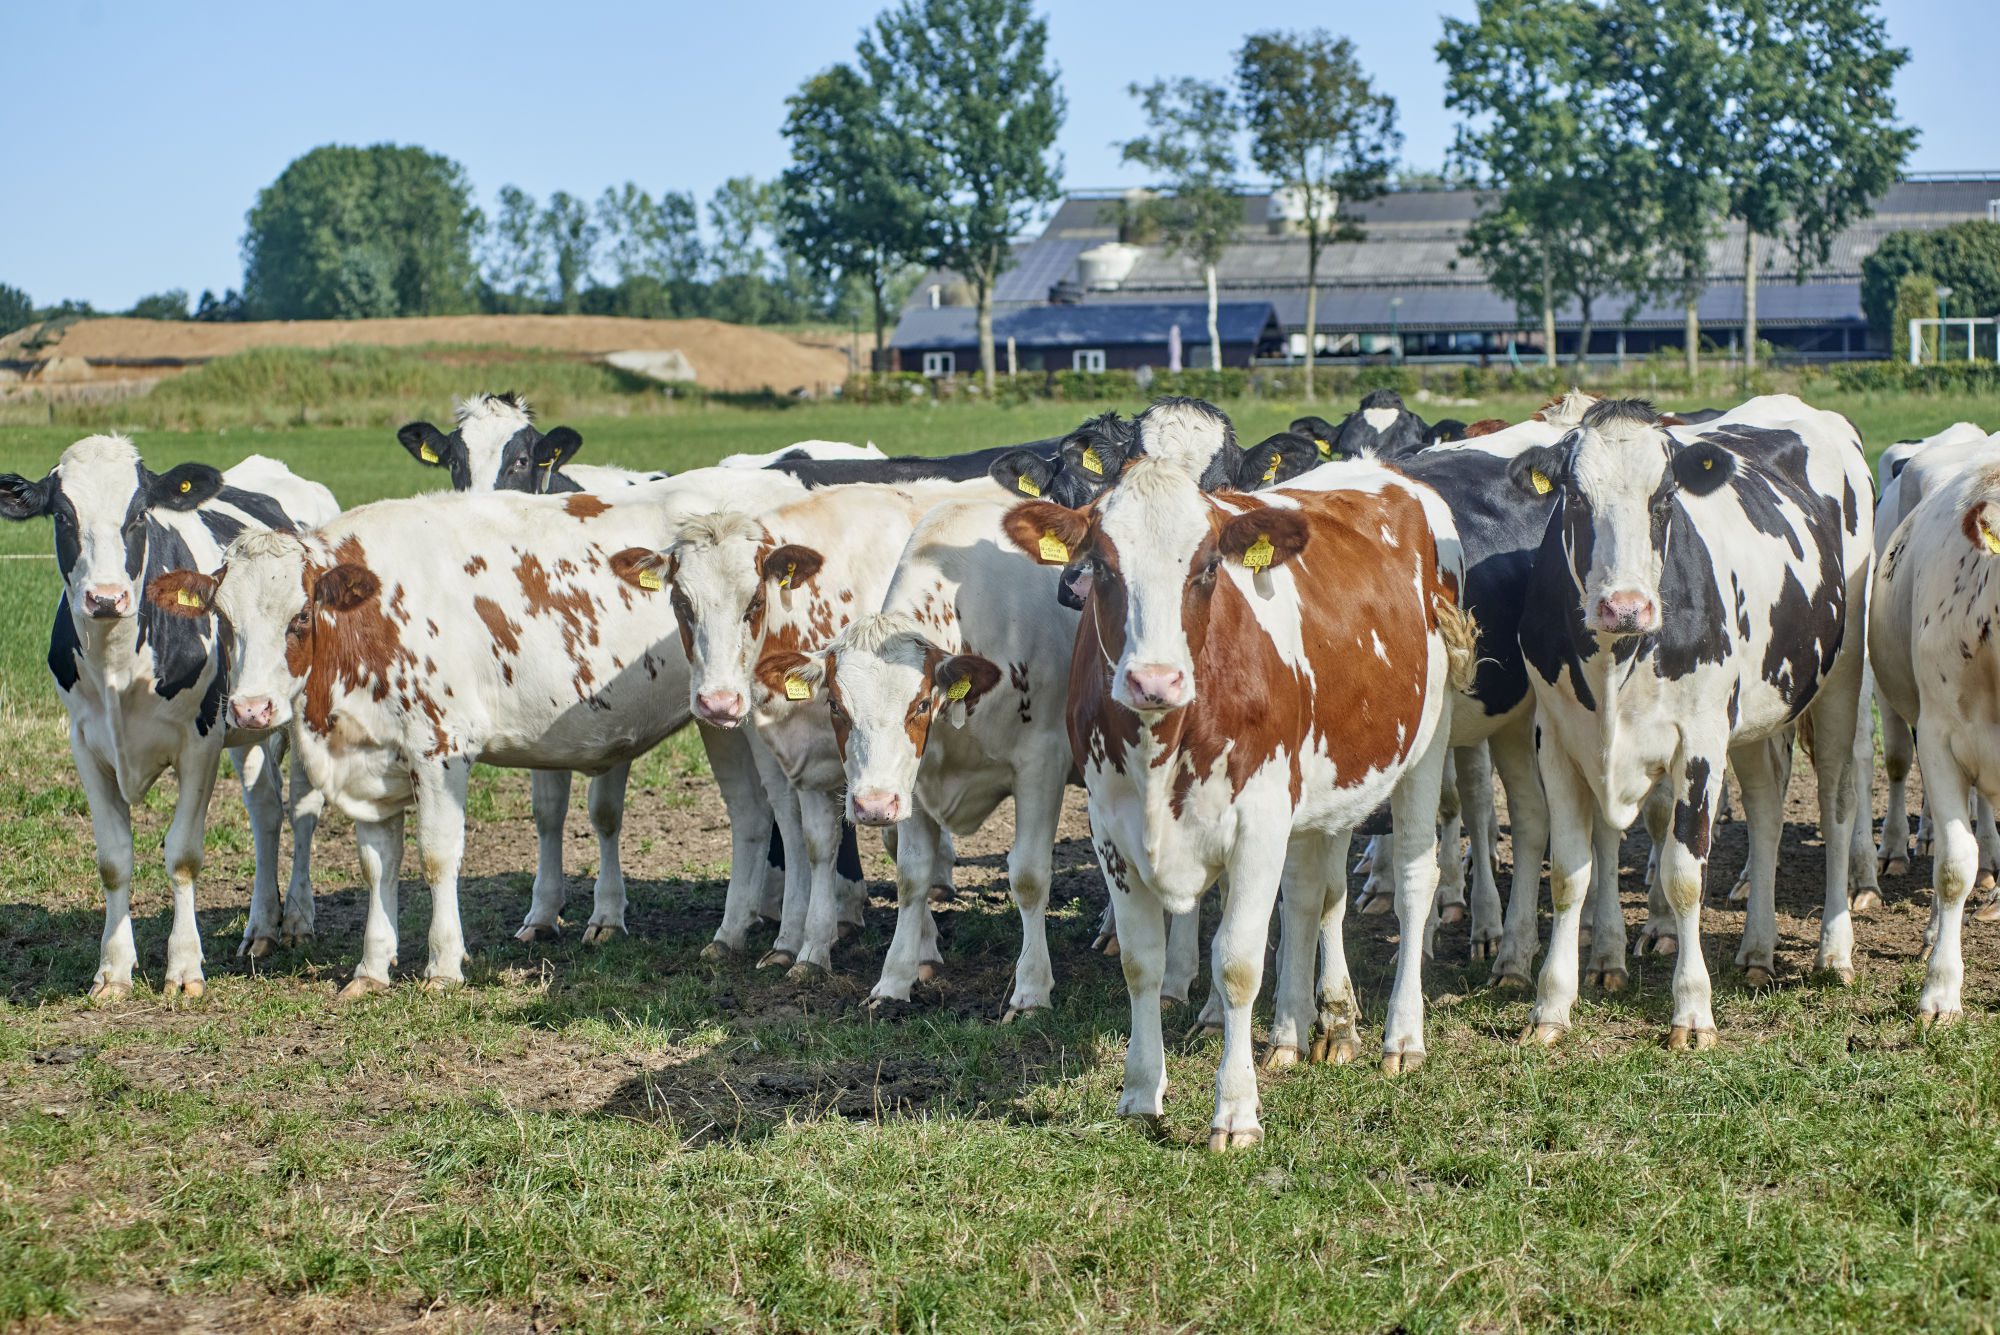 Regionale Herkunft: Regionales Rindfleisch mit Tierwohl Aspekten nach Haltungsform der Initiative Tierwohl